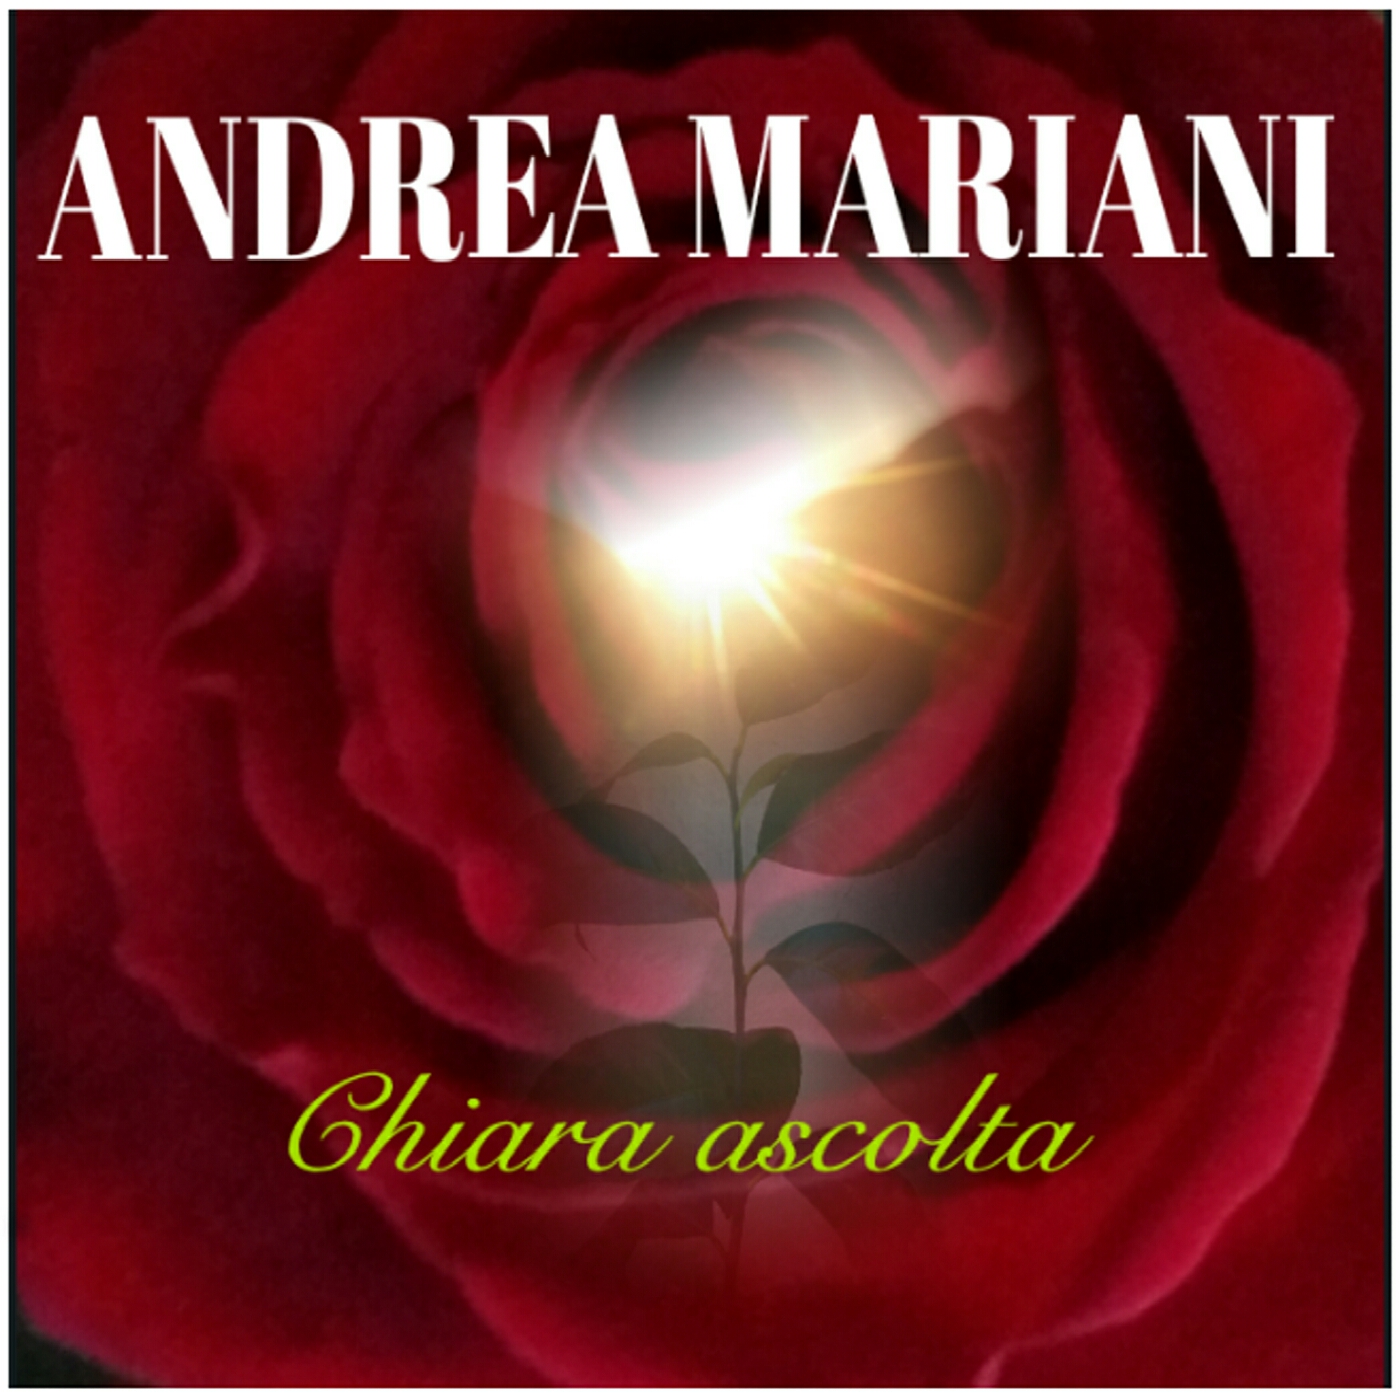 Foto profilo Andrea Mariani